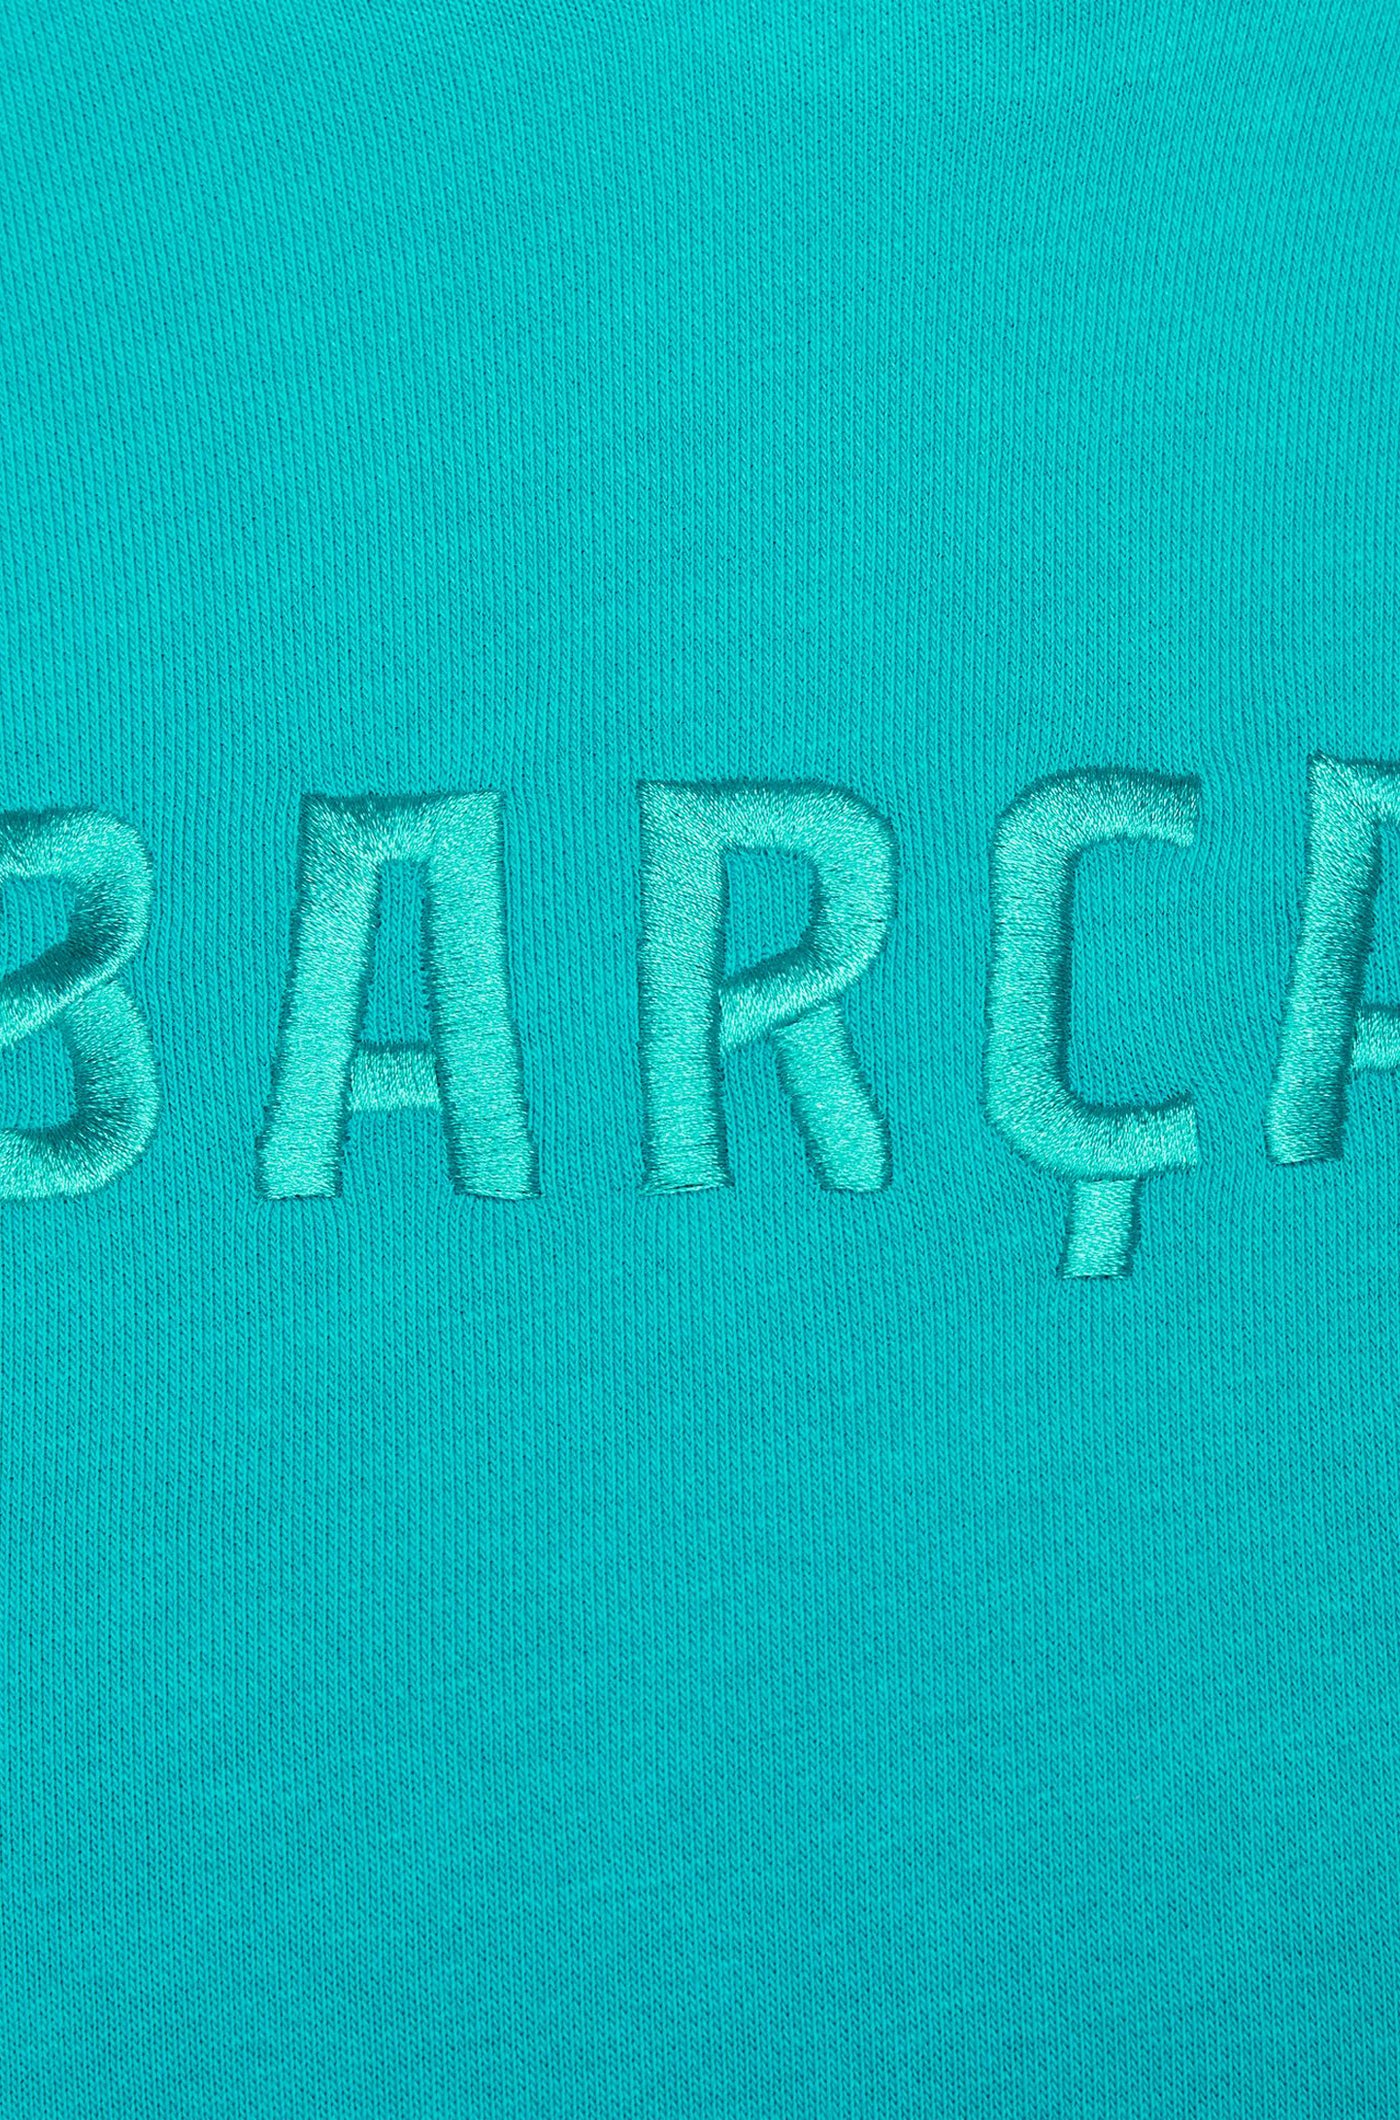 Dessuadora caputxa blau Barça Nike - Dona